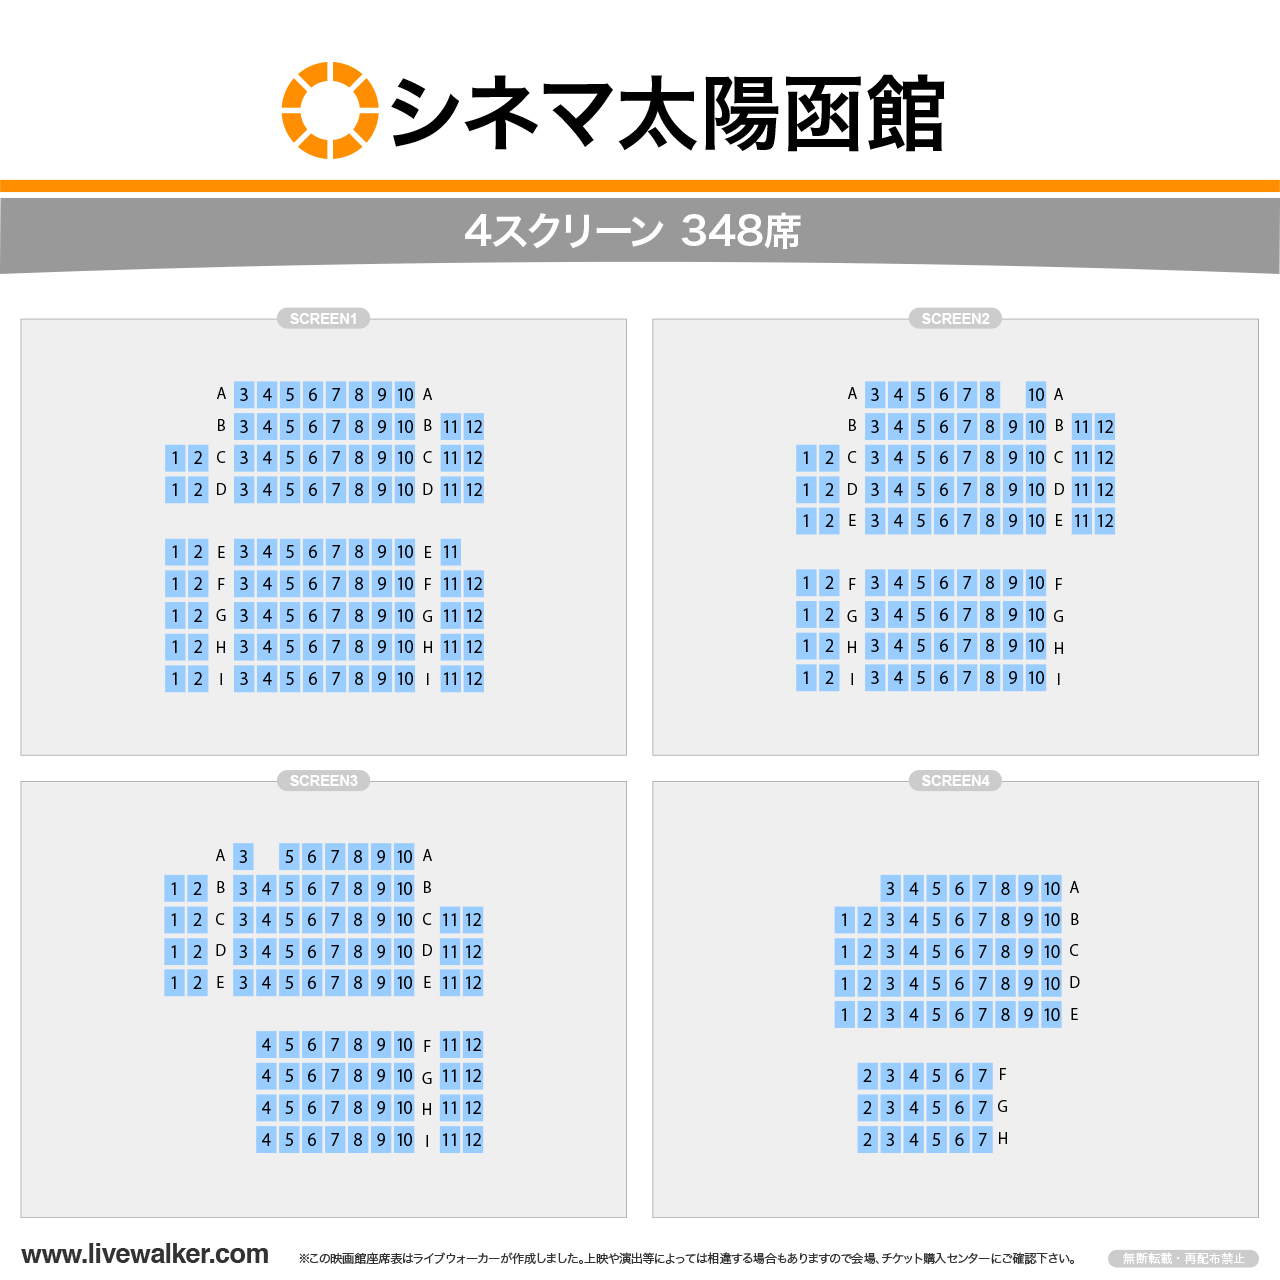 シネマ太陽函館スクリーンの座席表